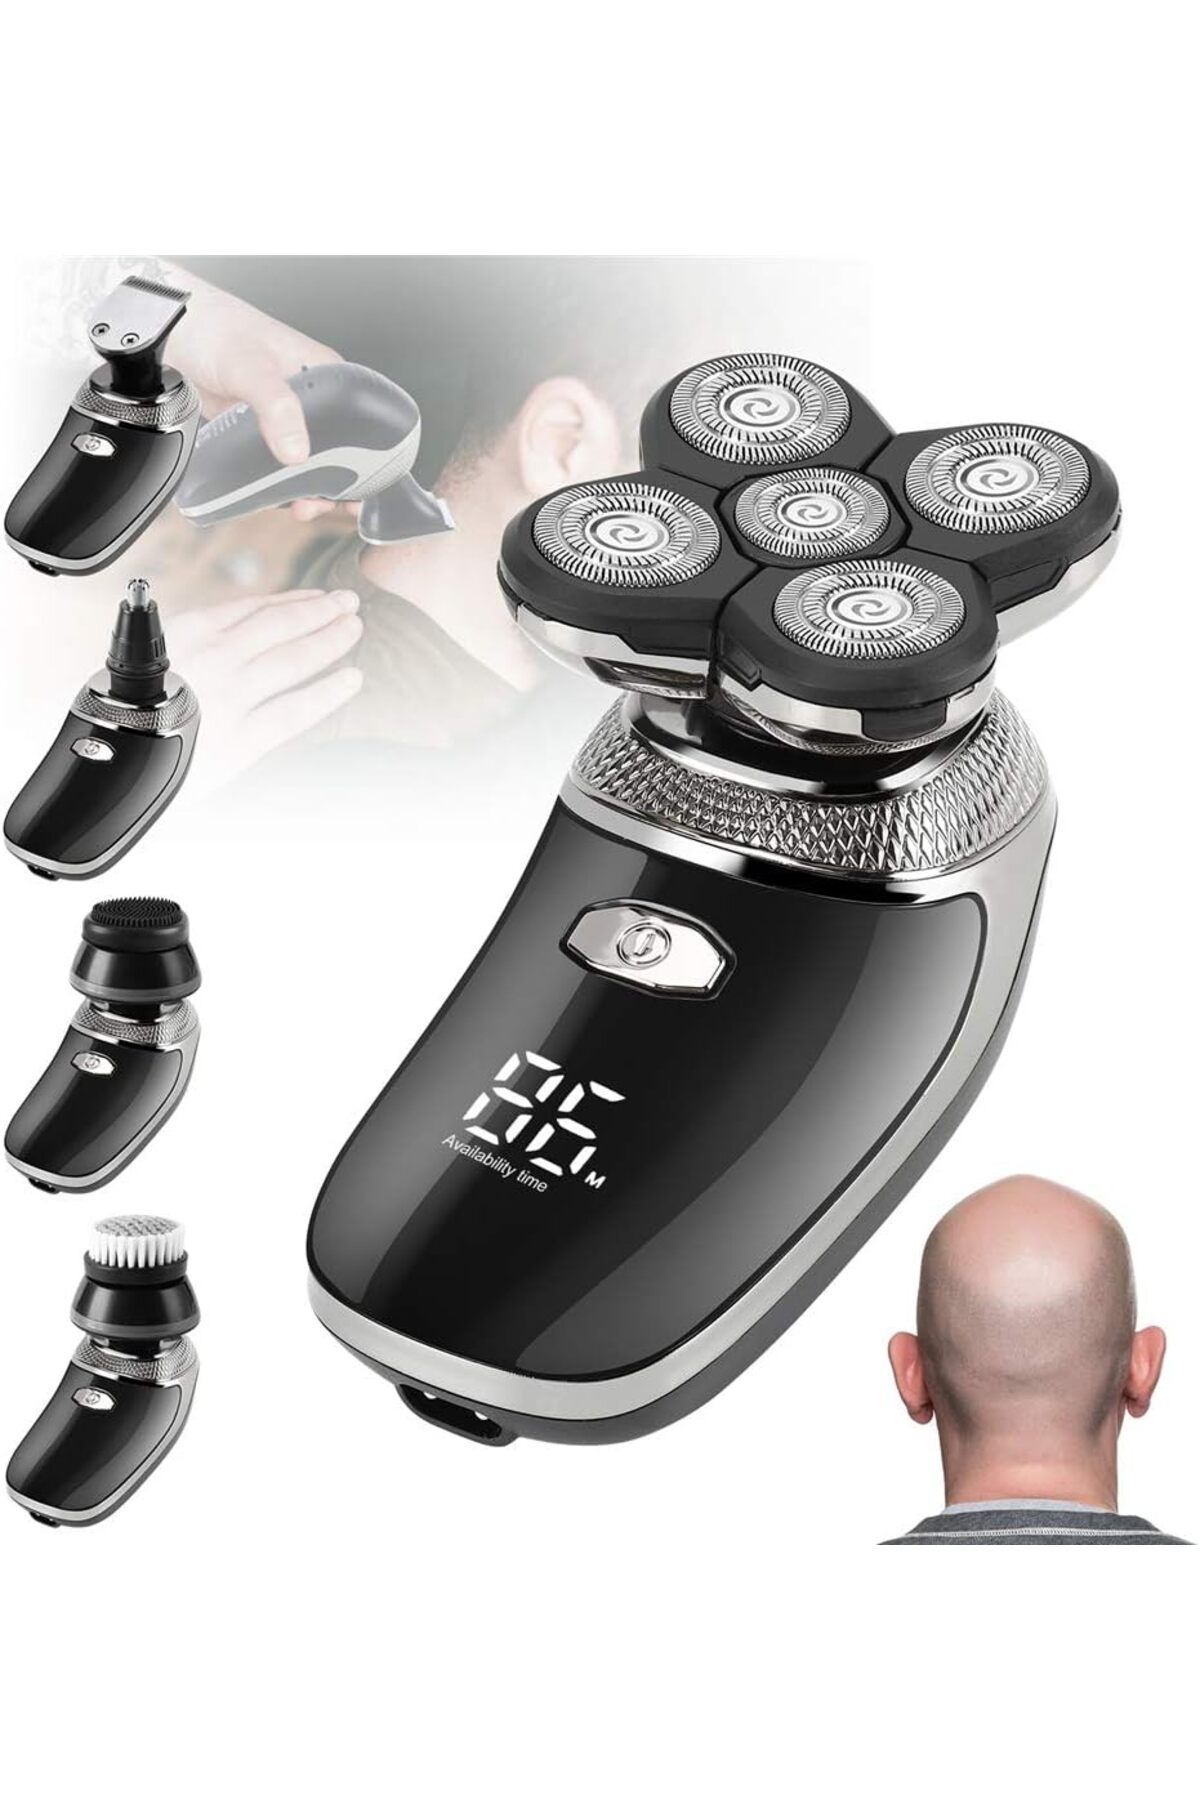 Franco Erkekler için Elektrikli Tıraş Makinesi USB Şarj Edilebilir Saçlar için Suya Dayanklı Kablosz